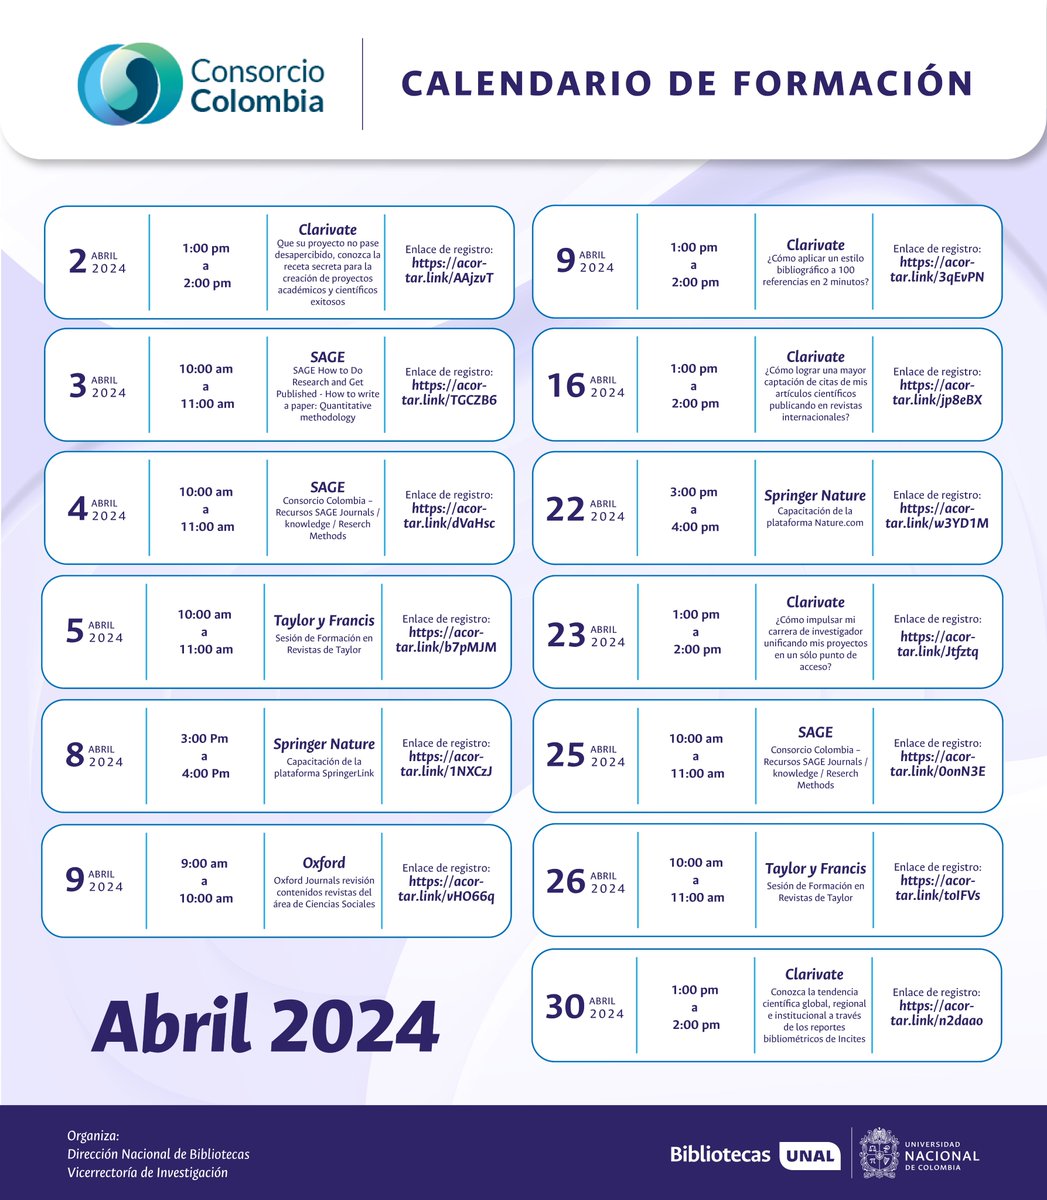 #ComunidadUNAL Prográmate para las capacitaciones de @ConsorcioColom1 programadas para abril de 2024 @dirsinab @UNALoficial: tiny.cc/sinabconsorcio… #UNAL